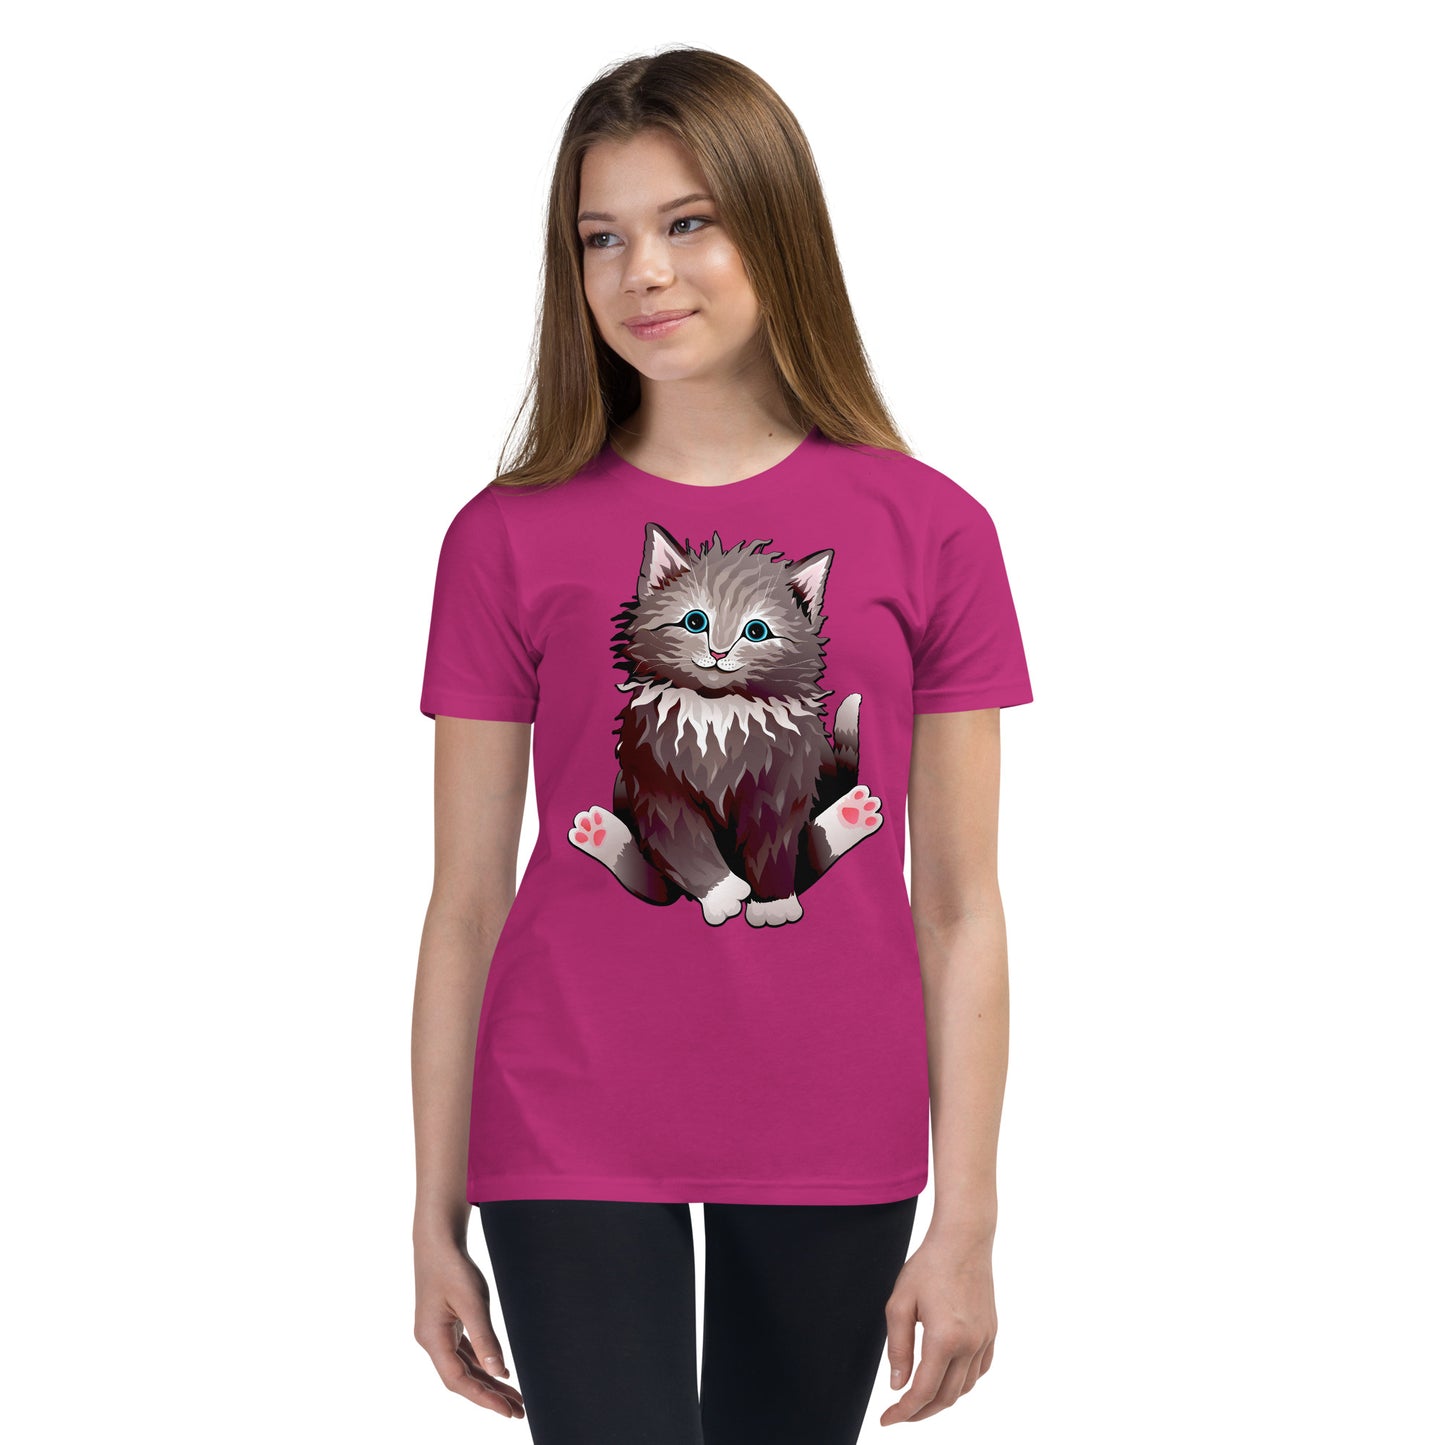 Cute Cat Smiling T-shirt, No. 0160